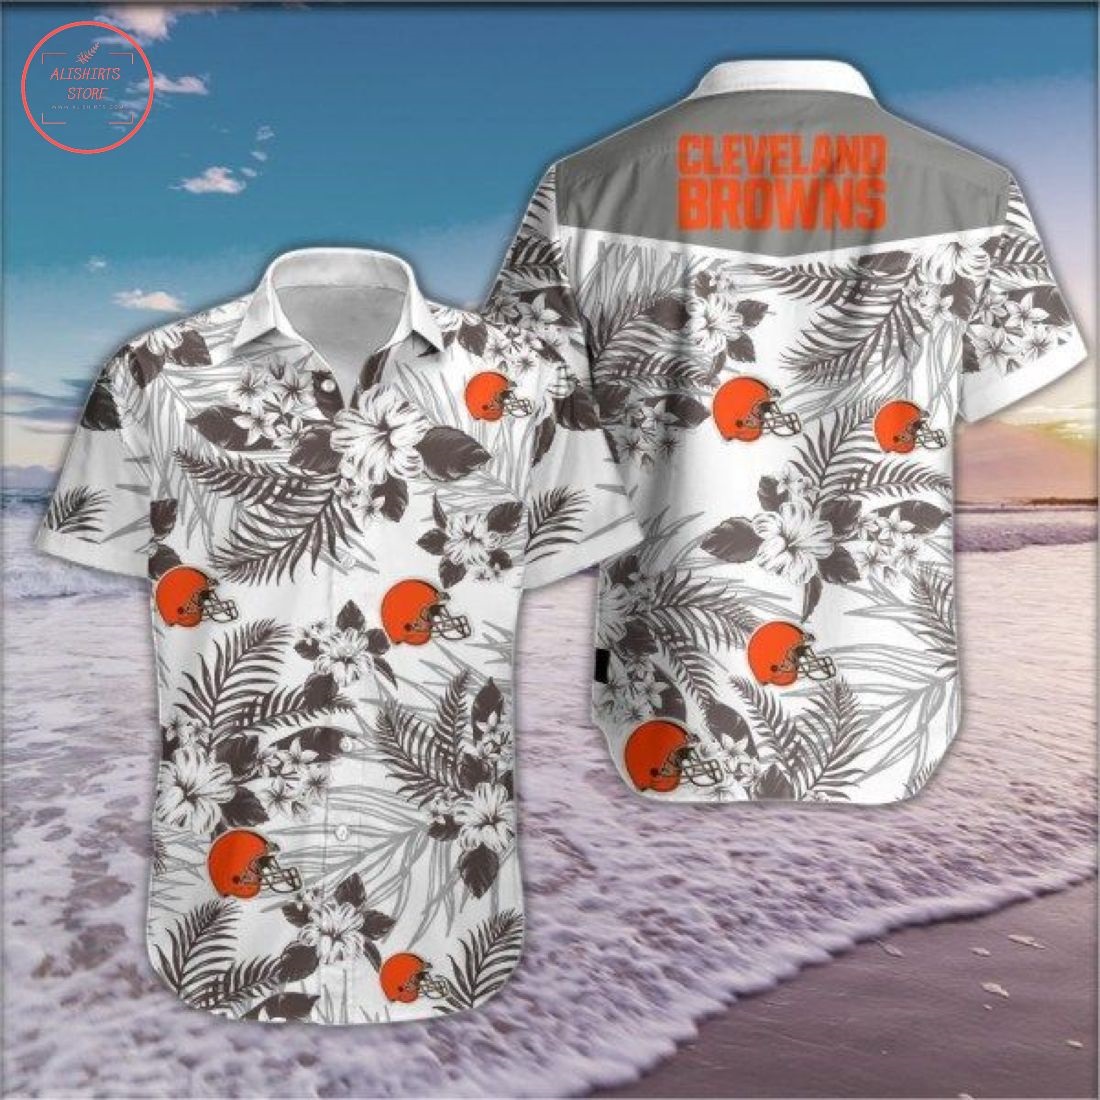 Nfl Cleveland Browns Floral Hawaiian Shirt